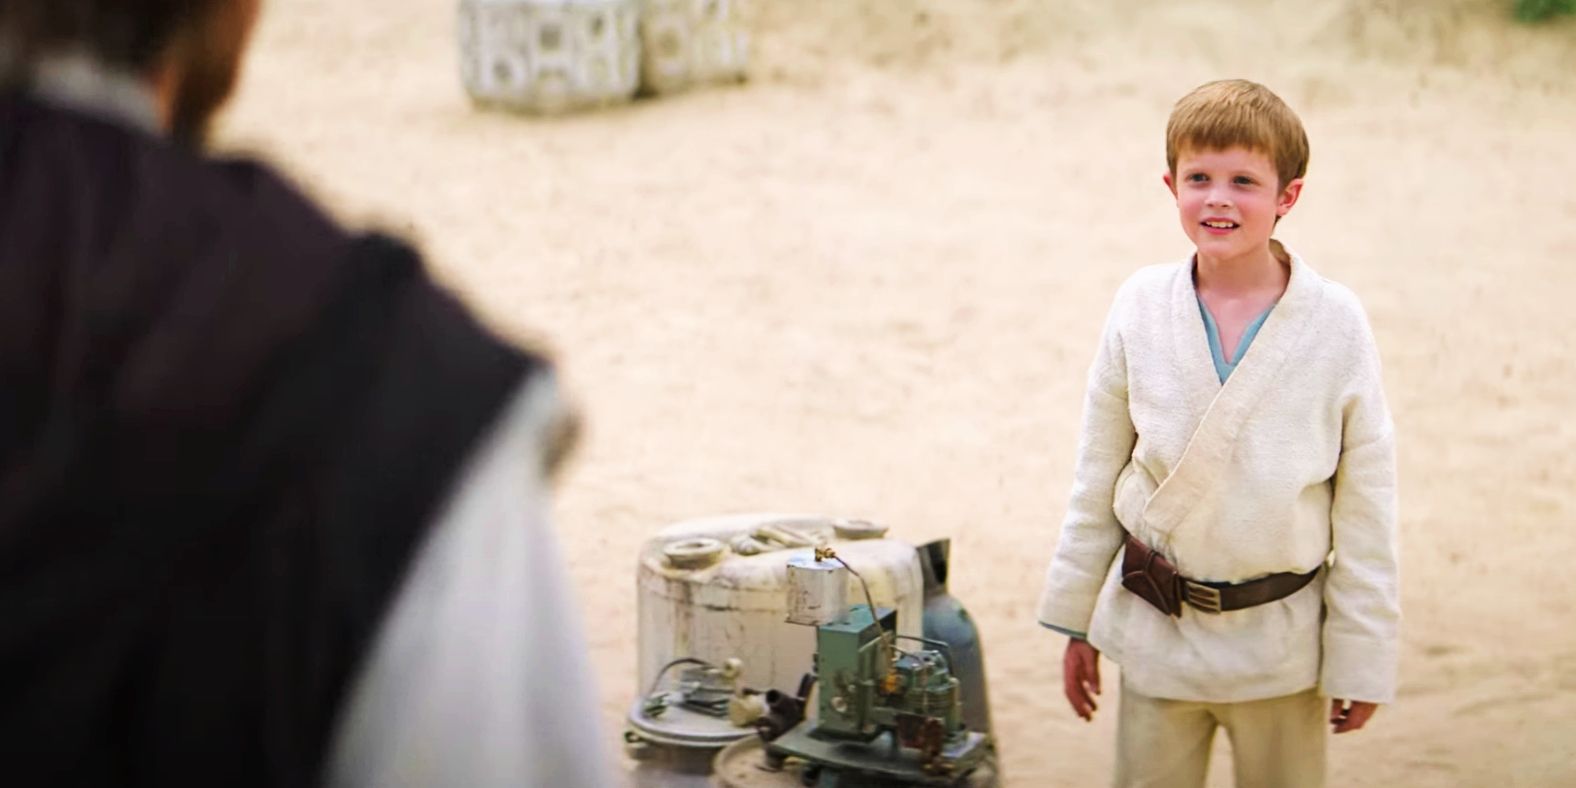 Obi-Wan meets Luke in Obi-Wan Kenobi